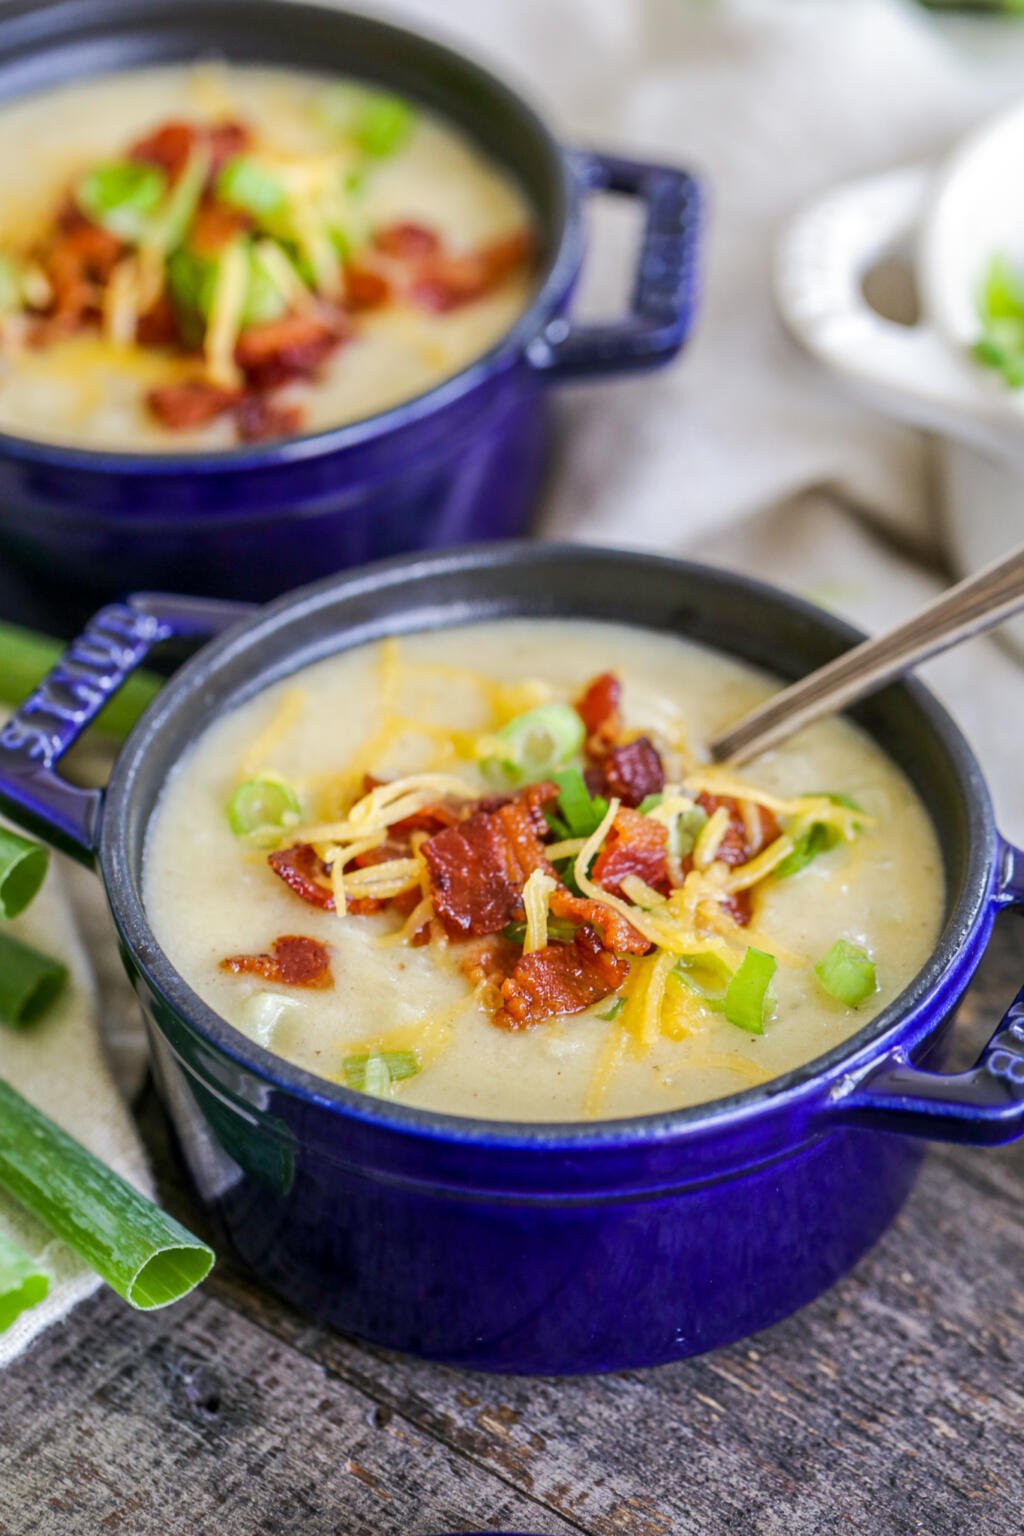 Creamy Potato Soup Recipe - Momsdish